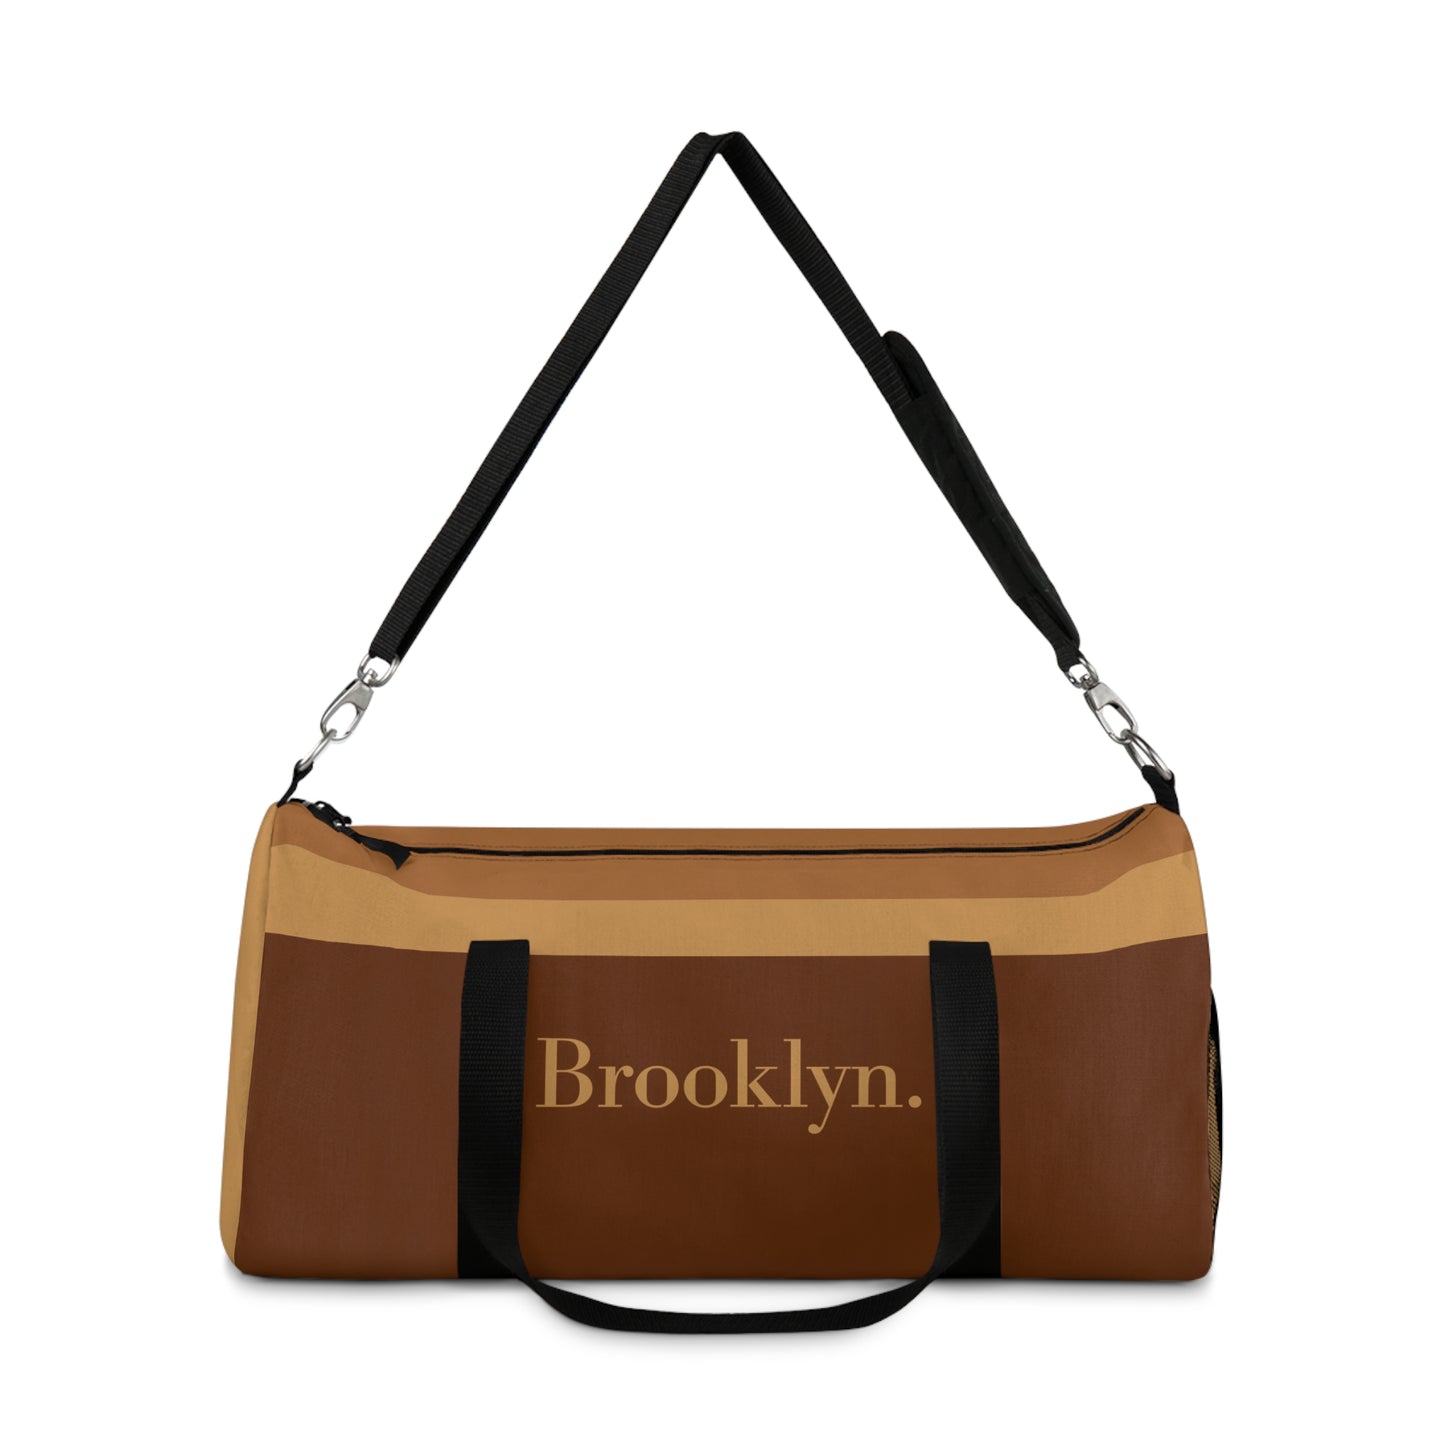 Brooklyn Duffle Bag